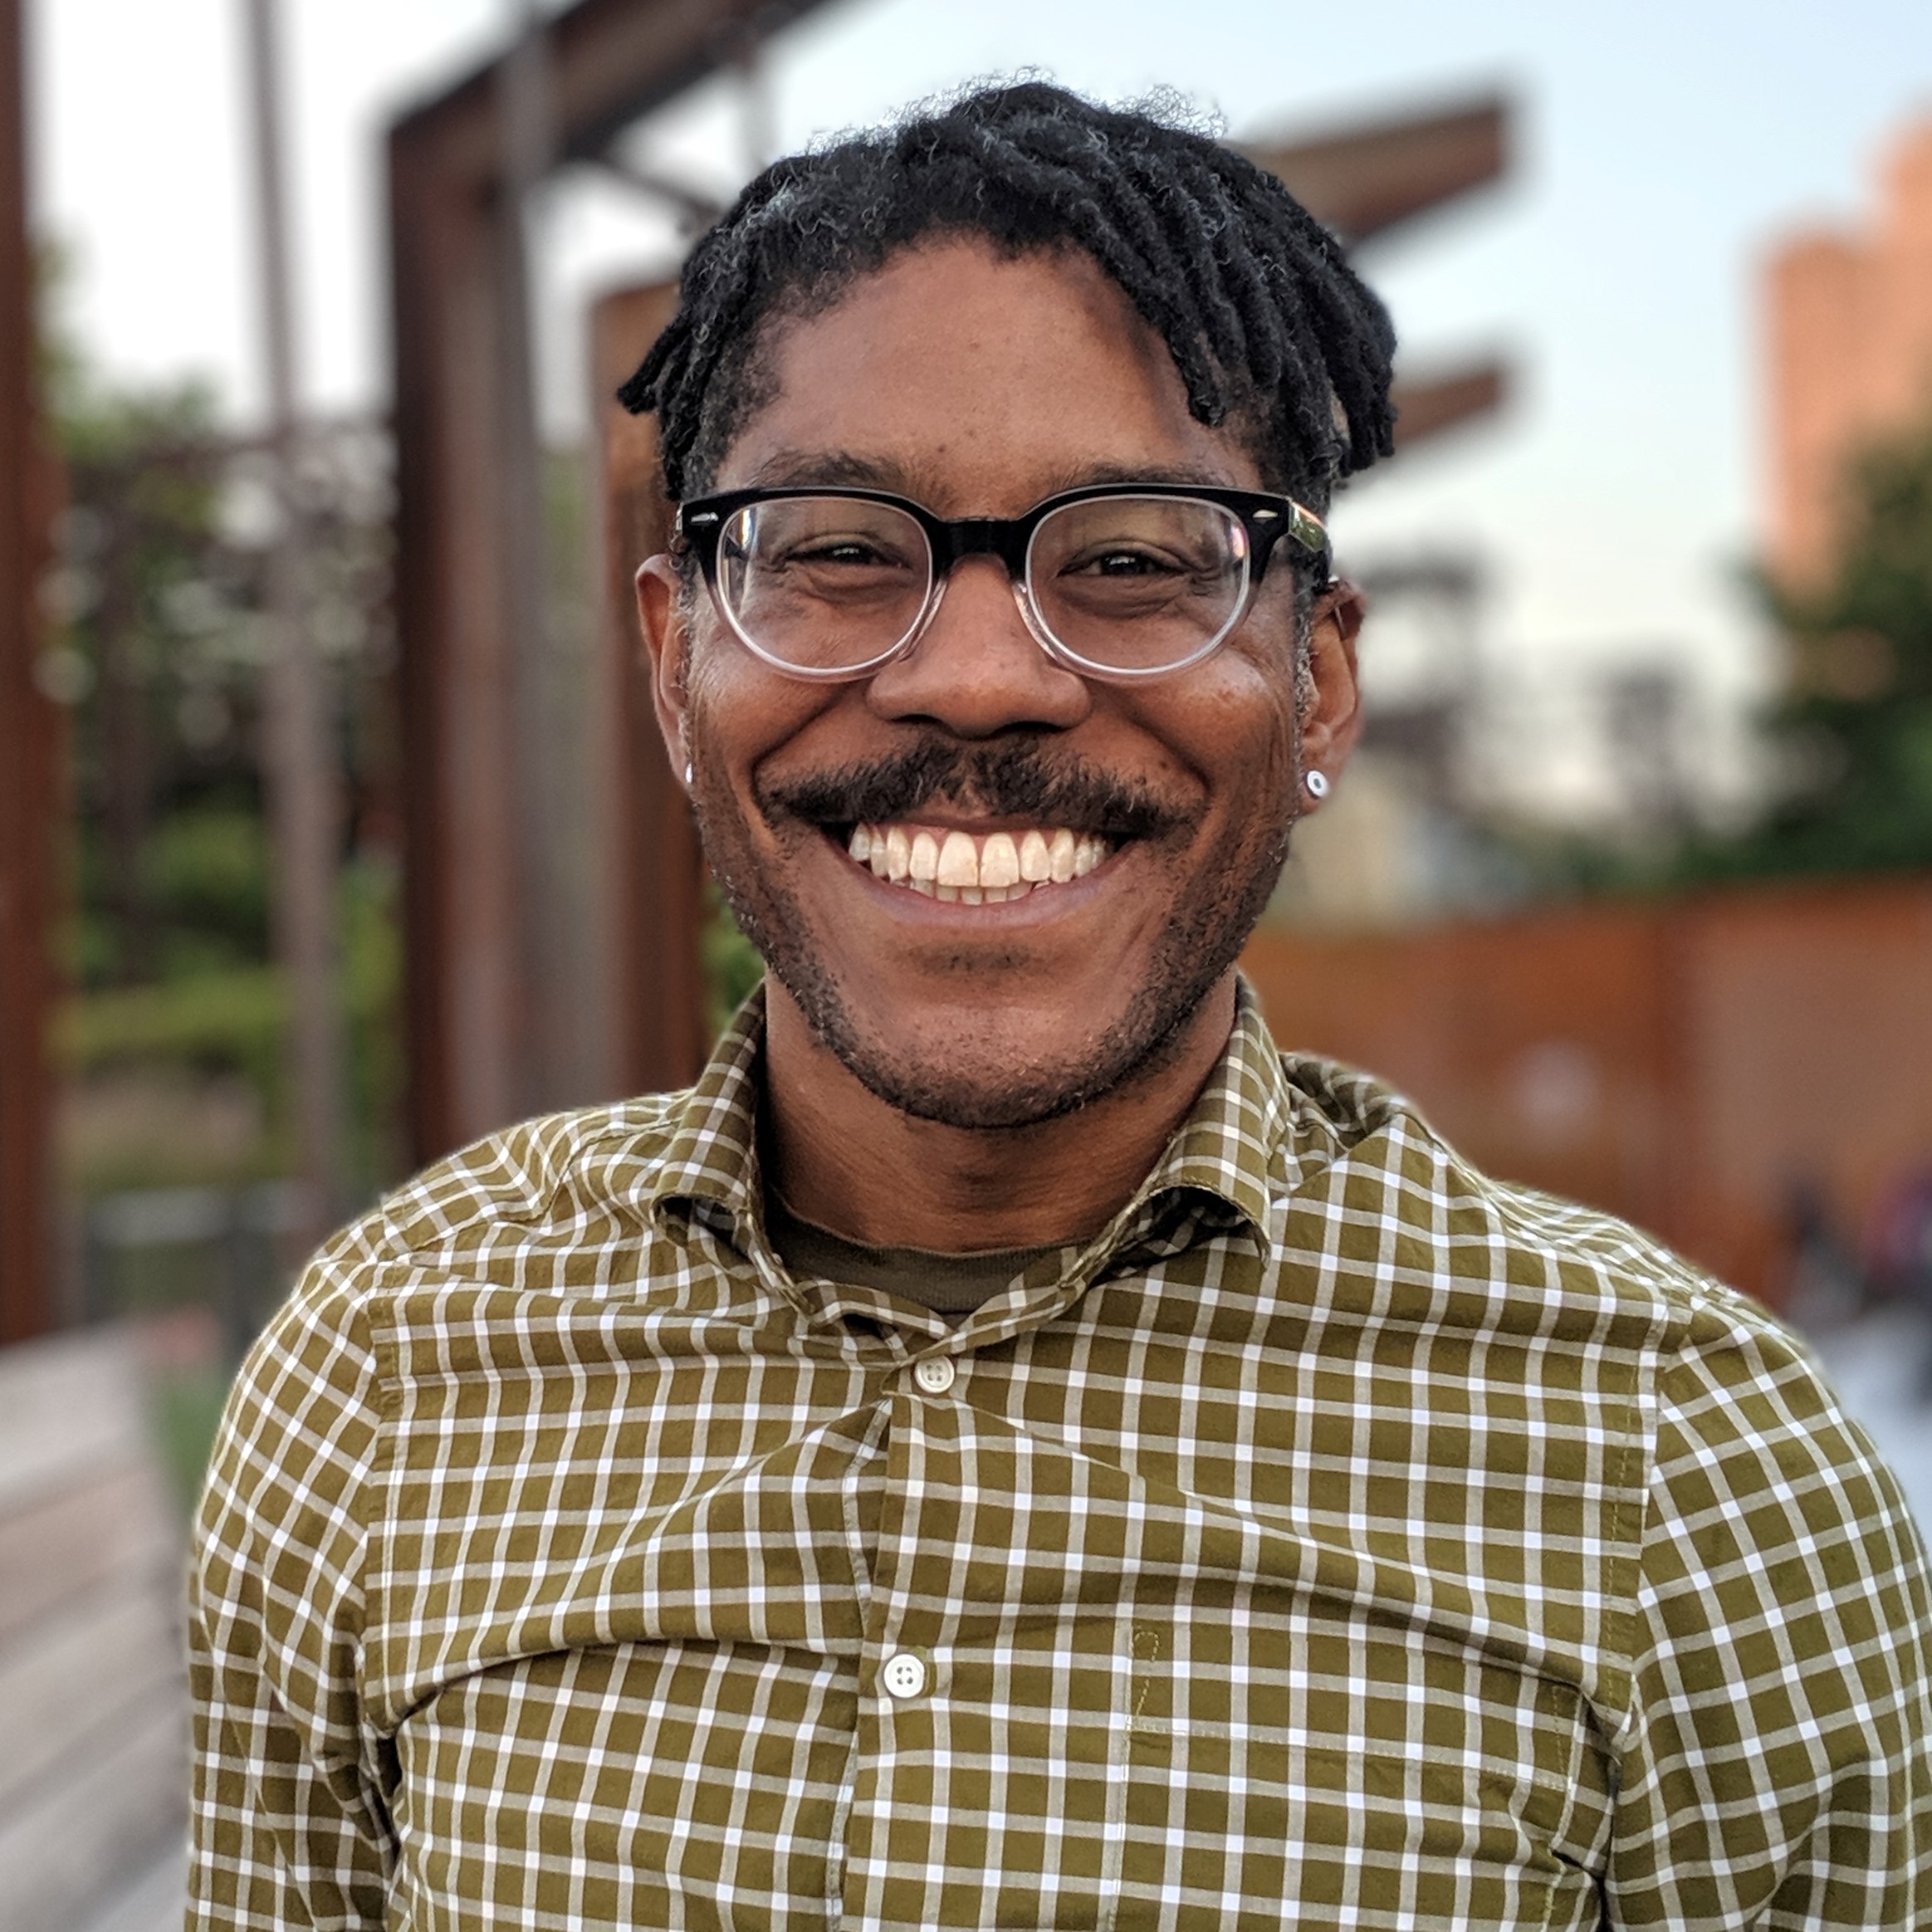 Retrato de un hombre negro con lentes, bigote, sonrisa radiante y camisa a cuadros.